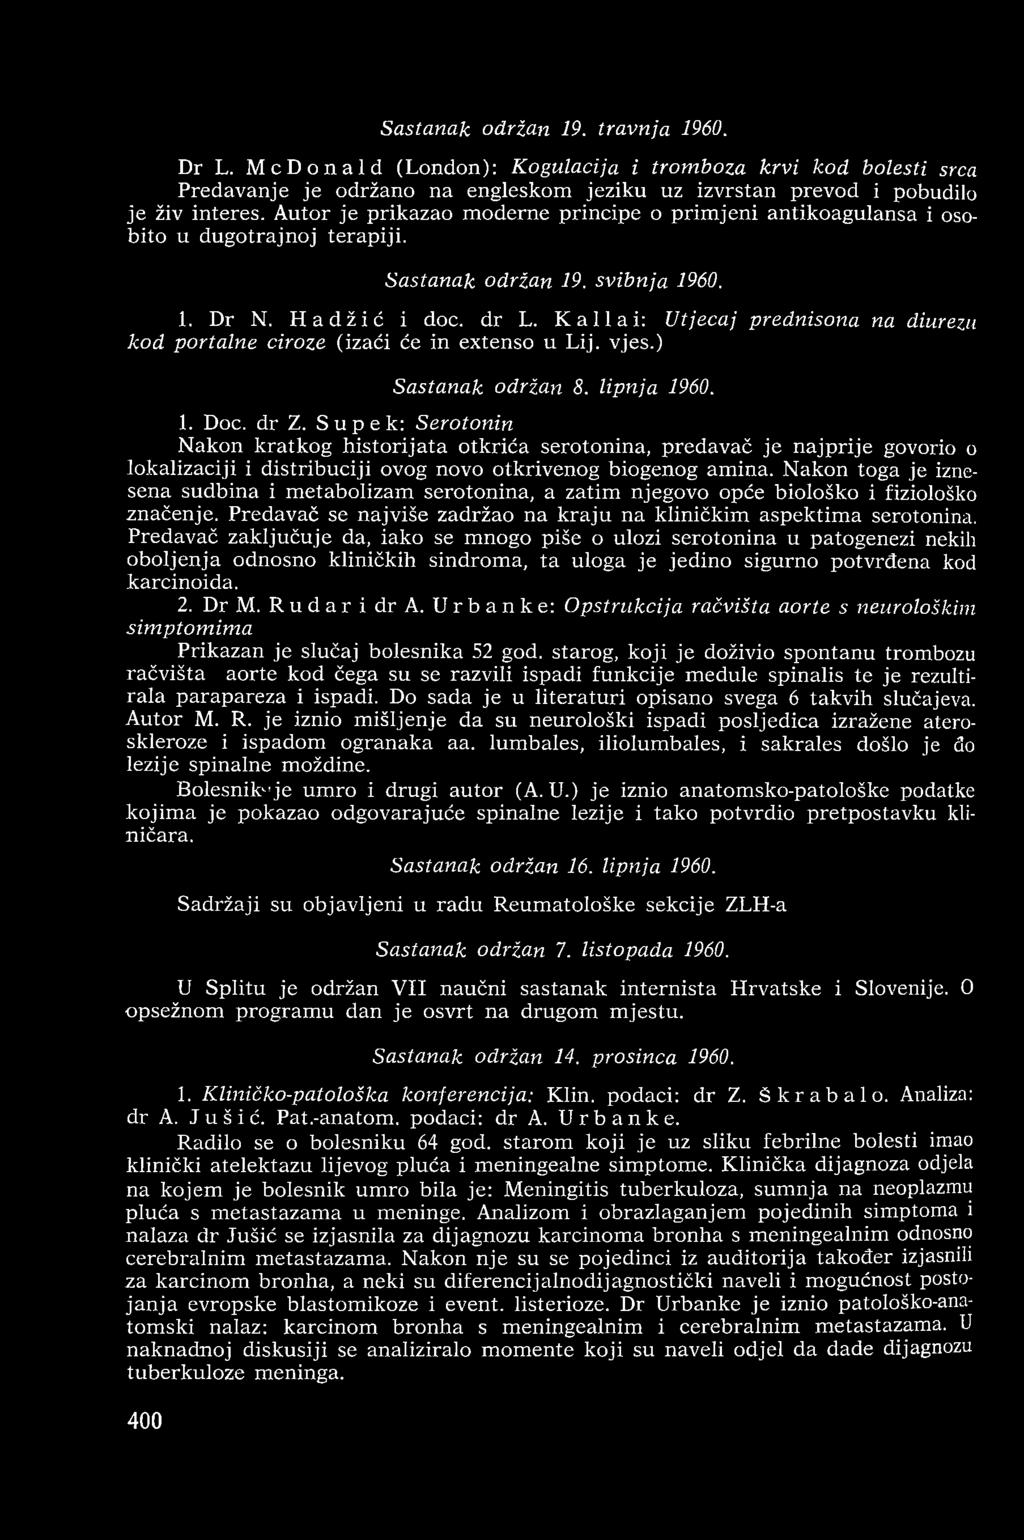 Kallai: Utjecaj prednisona na diurezu kod portalne ciroze (izaći će in extenso u Lij. vjes.) Sastanak održan 8. lipnja 1960. 1. Doc. dr Z.